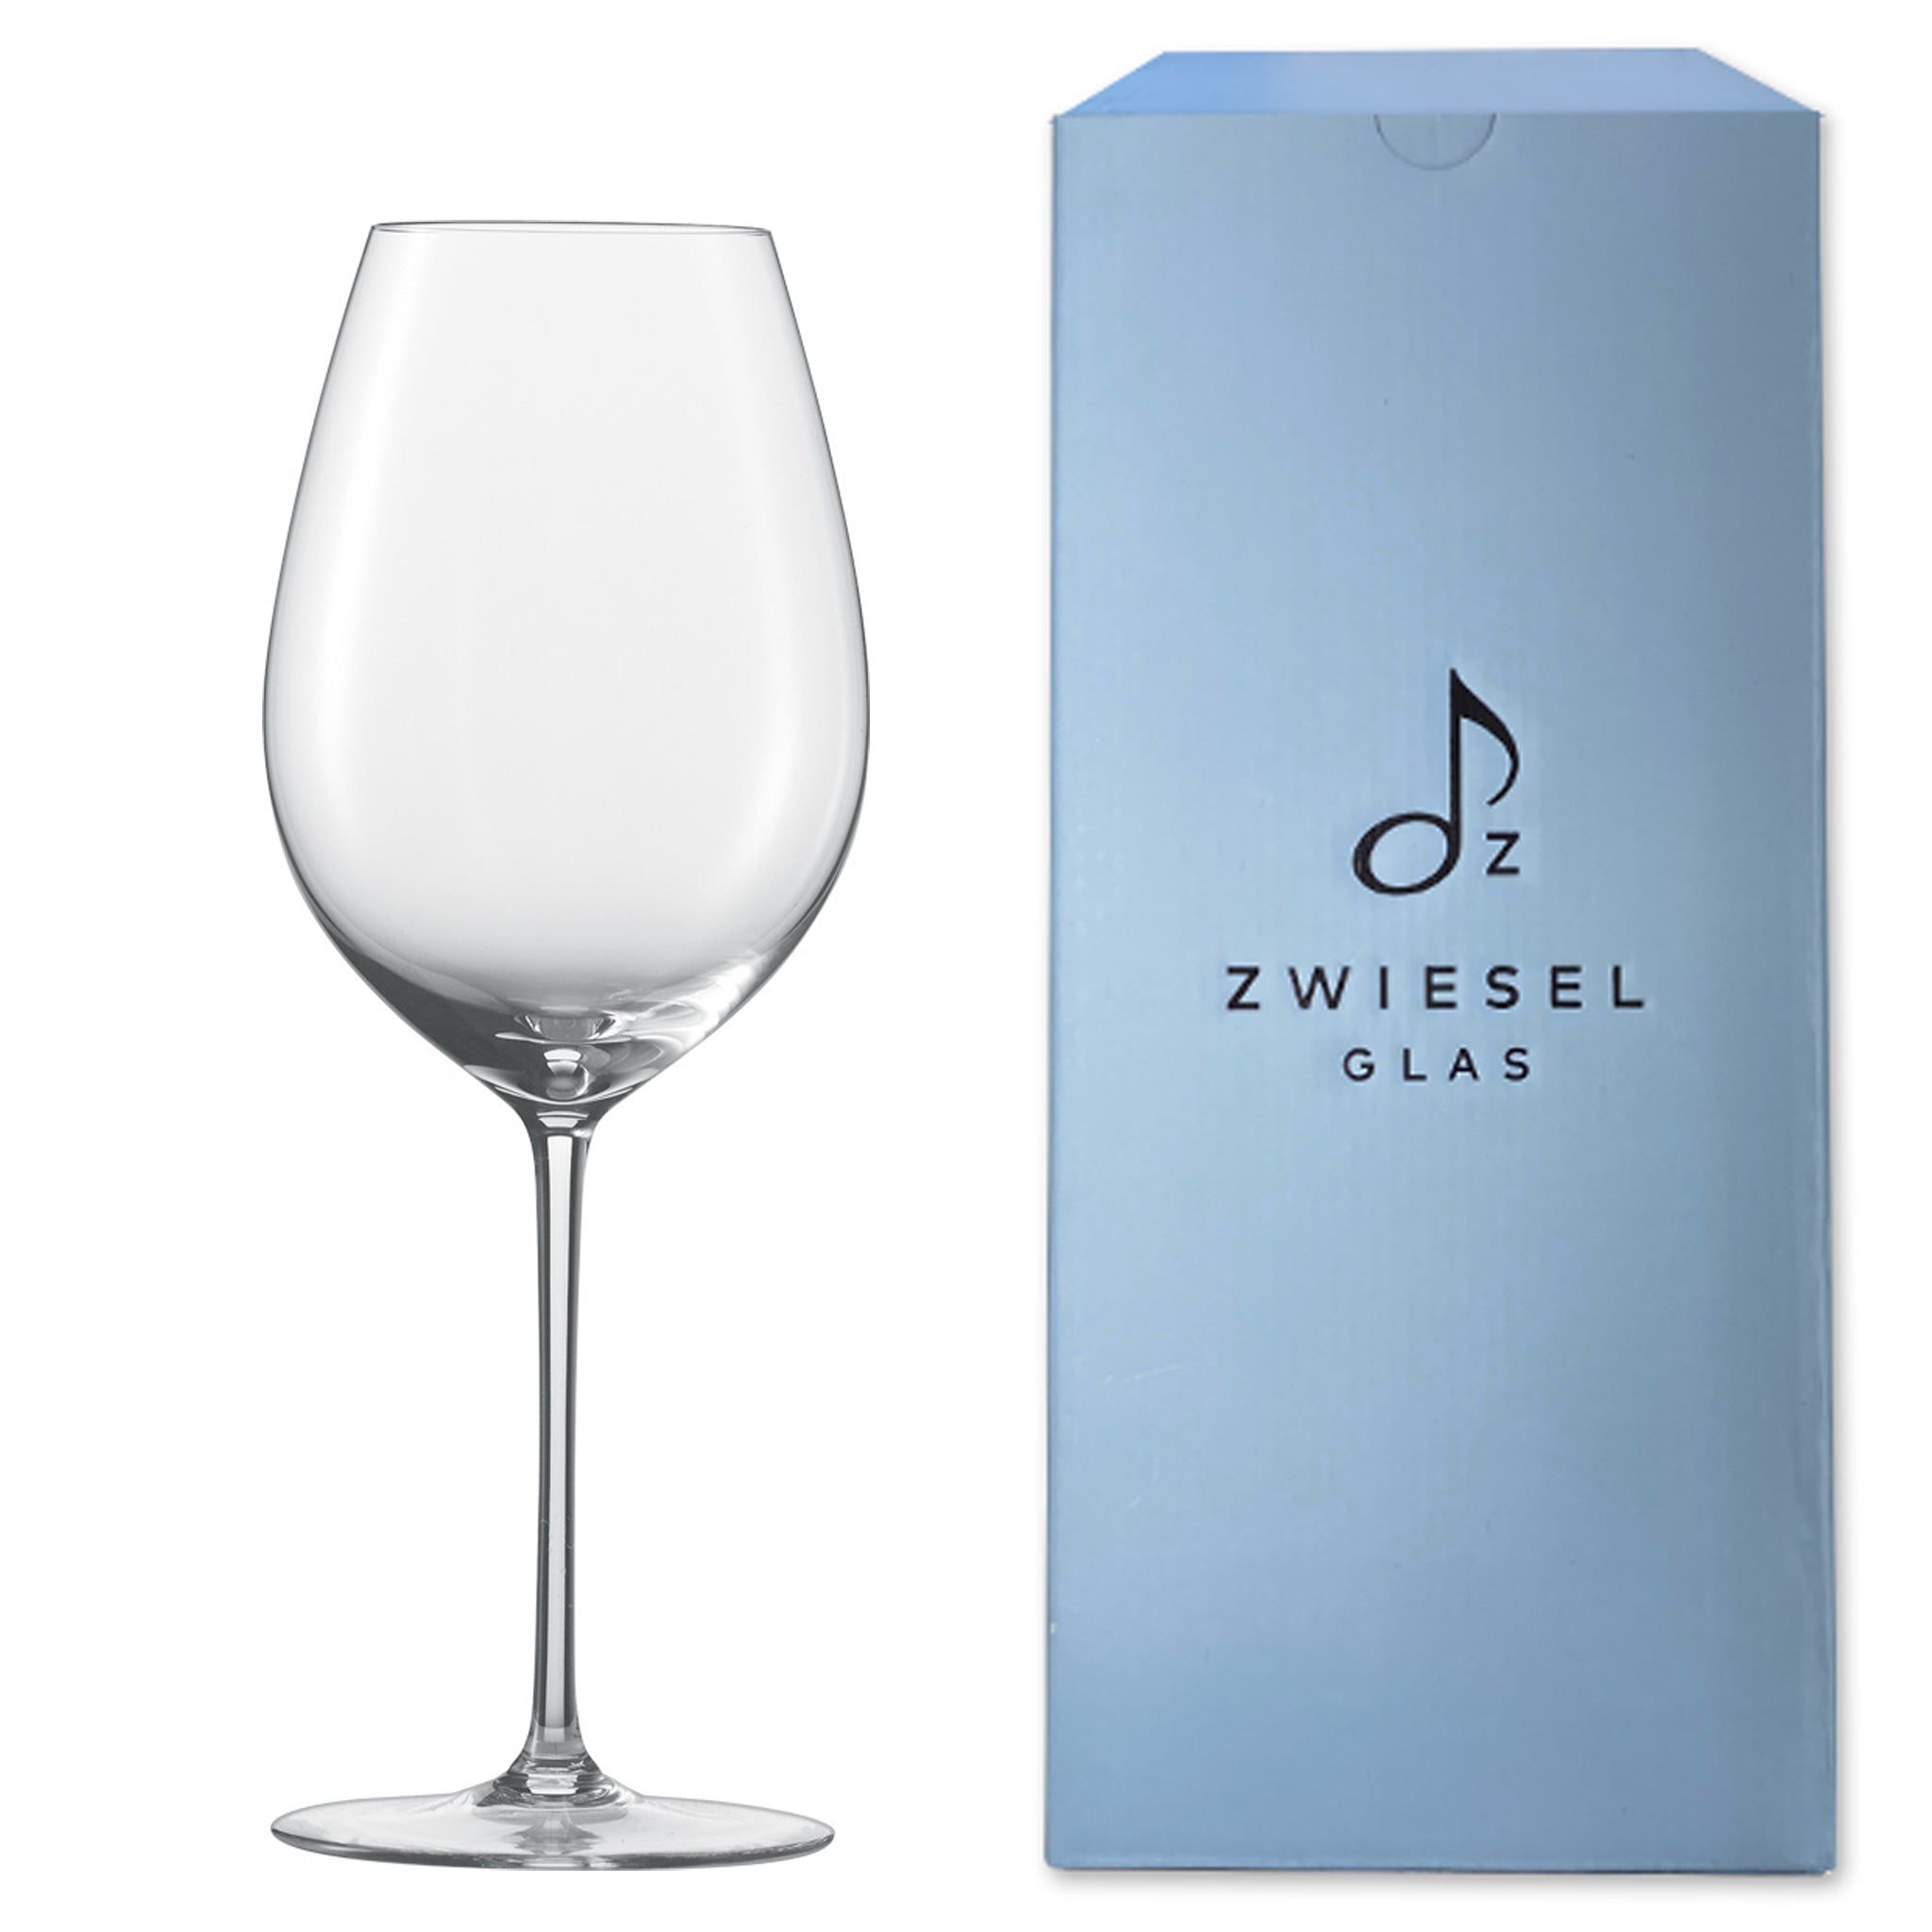 赤ワインに合うグラス | ツヴィーゼル公式サイト – ツヴィーゼル・ジャパン